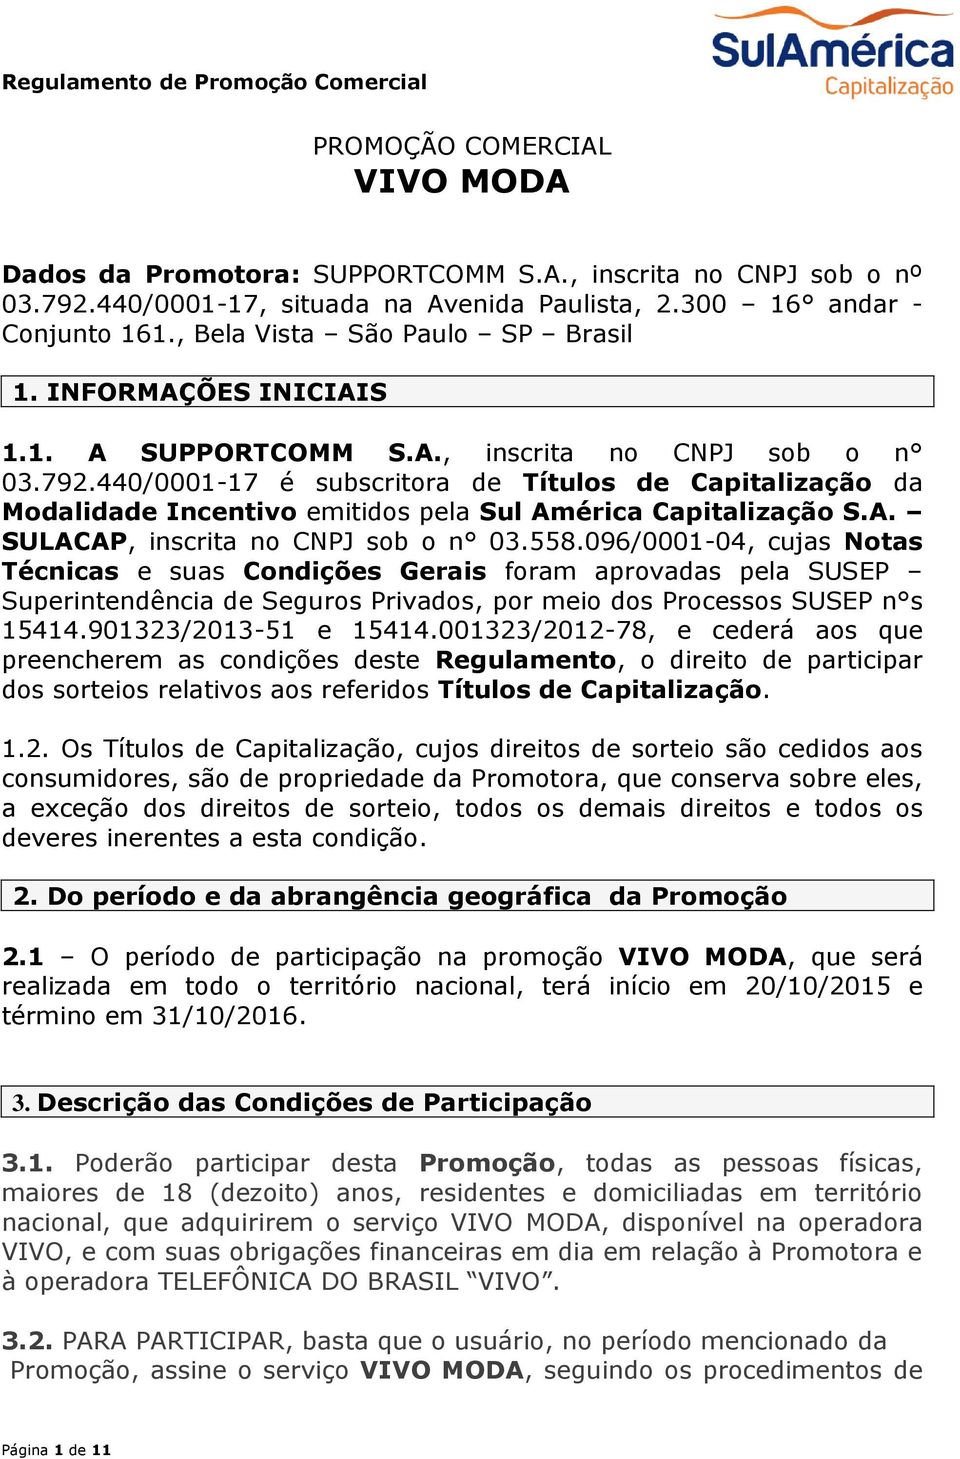 440/0001-17 é subscritora de Títulos de Capitalização da Modalidade Incentivo emitidos pela Sul América Capitalização S.A. SULACAP, inscrita no CNPJ sob o n 03.558.